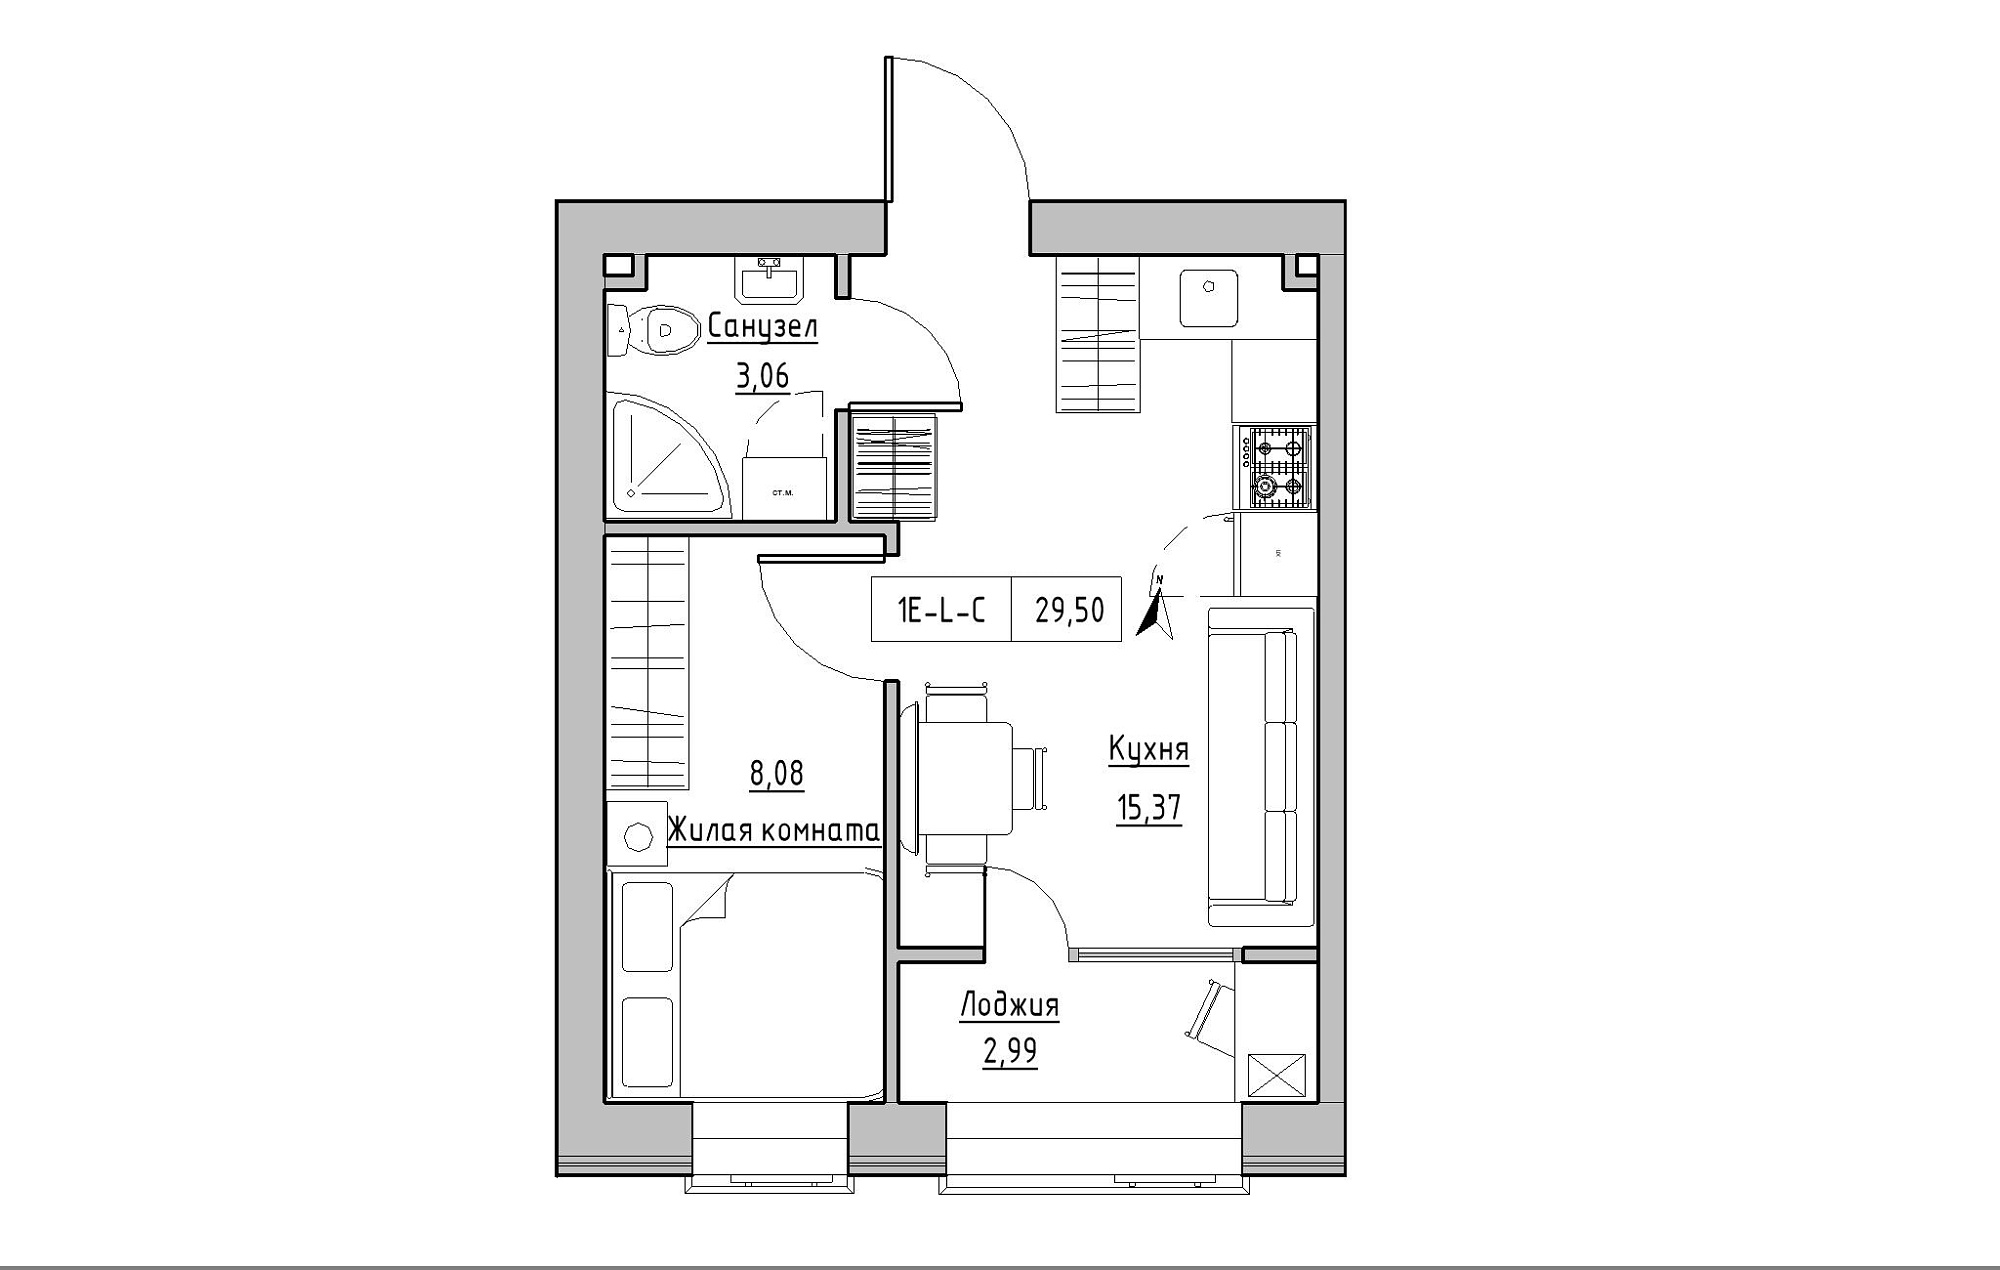 Планировка 1-к квартира площей 29.5м2, KS-019-03/0010.